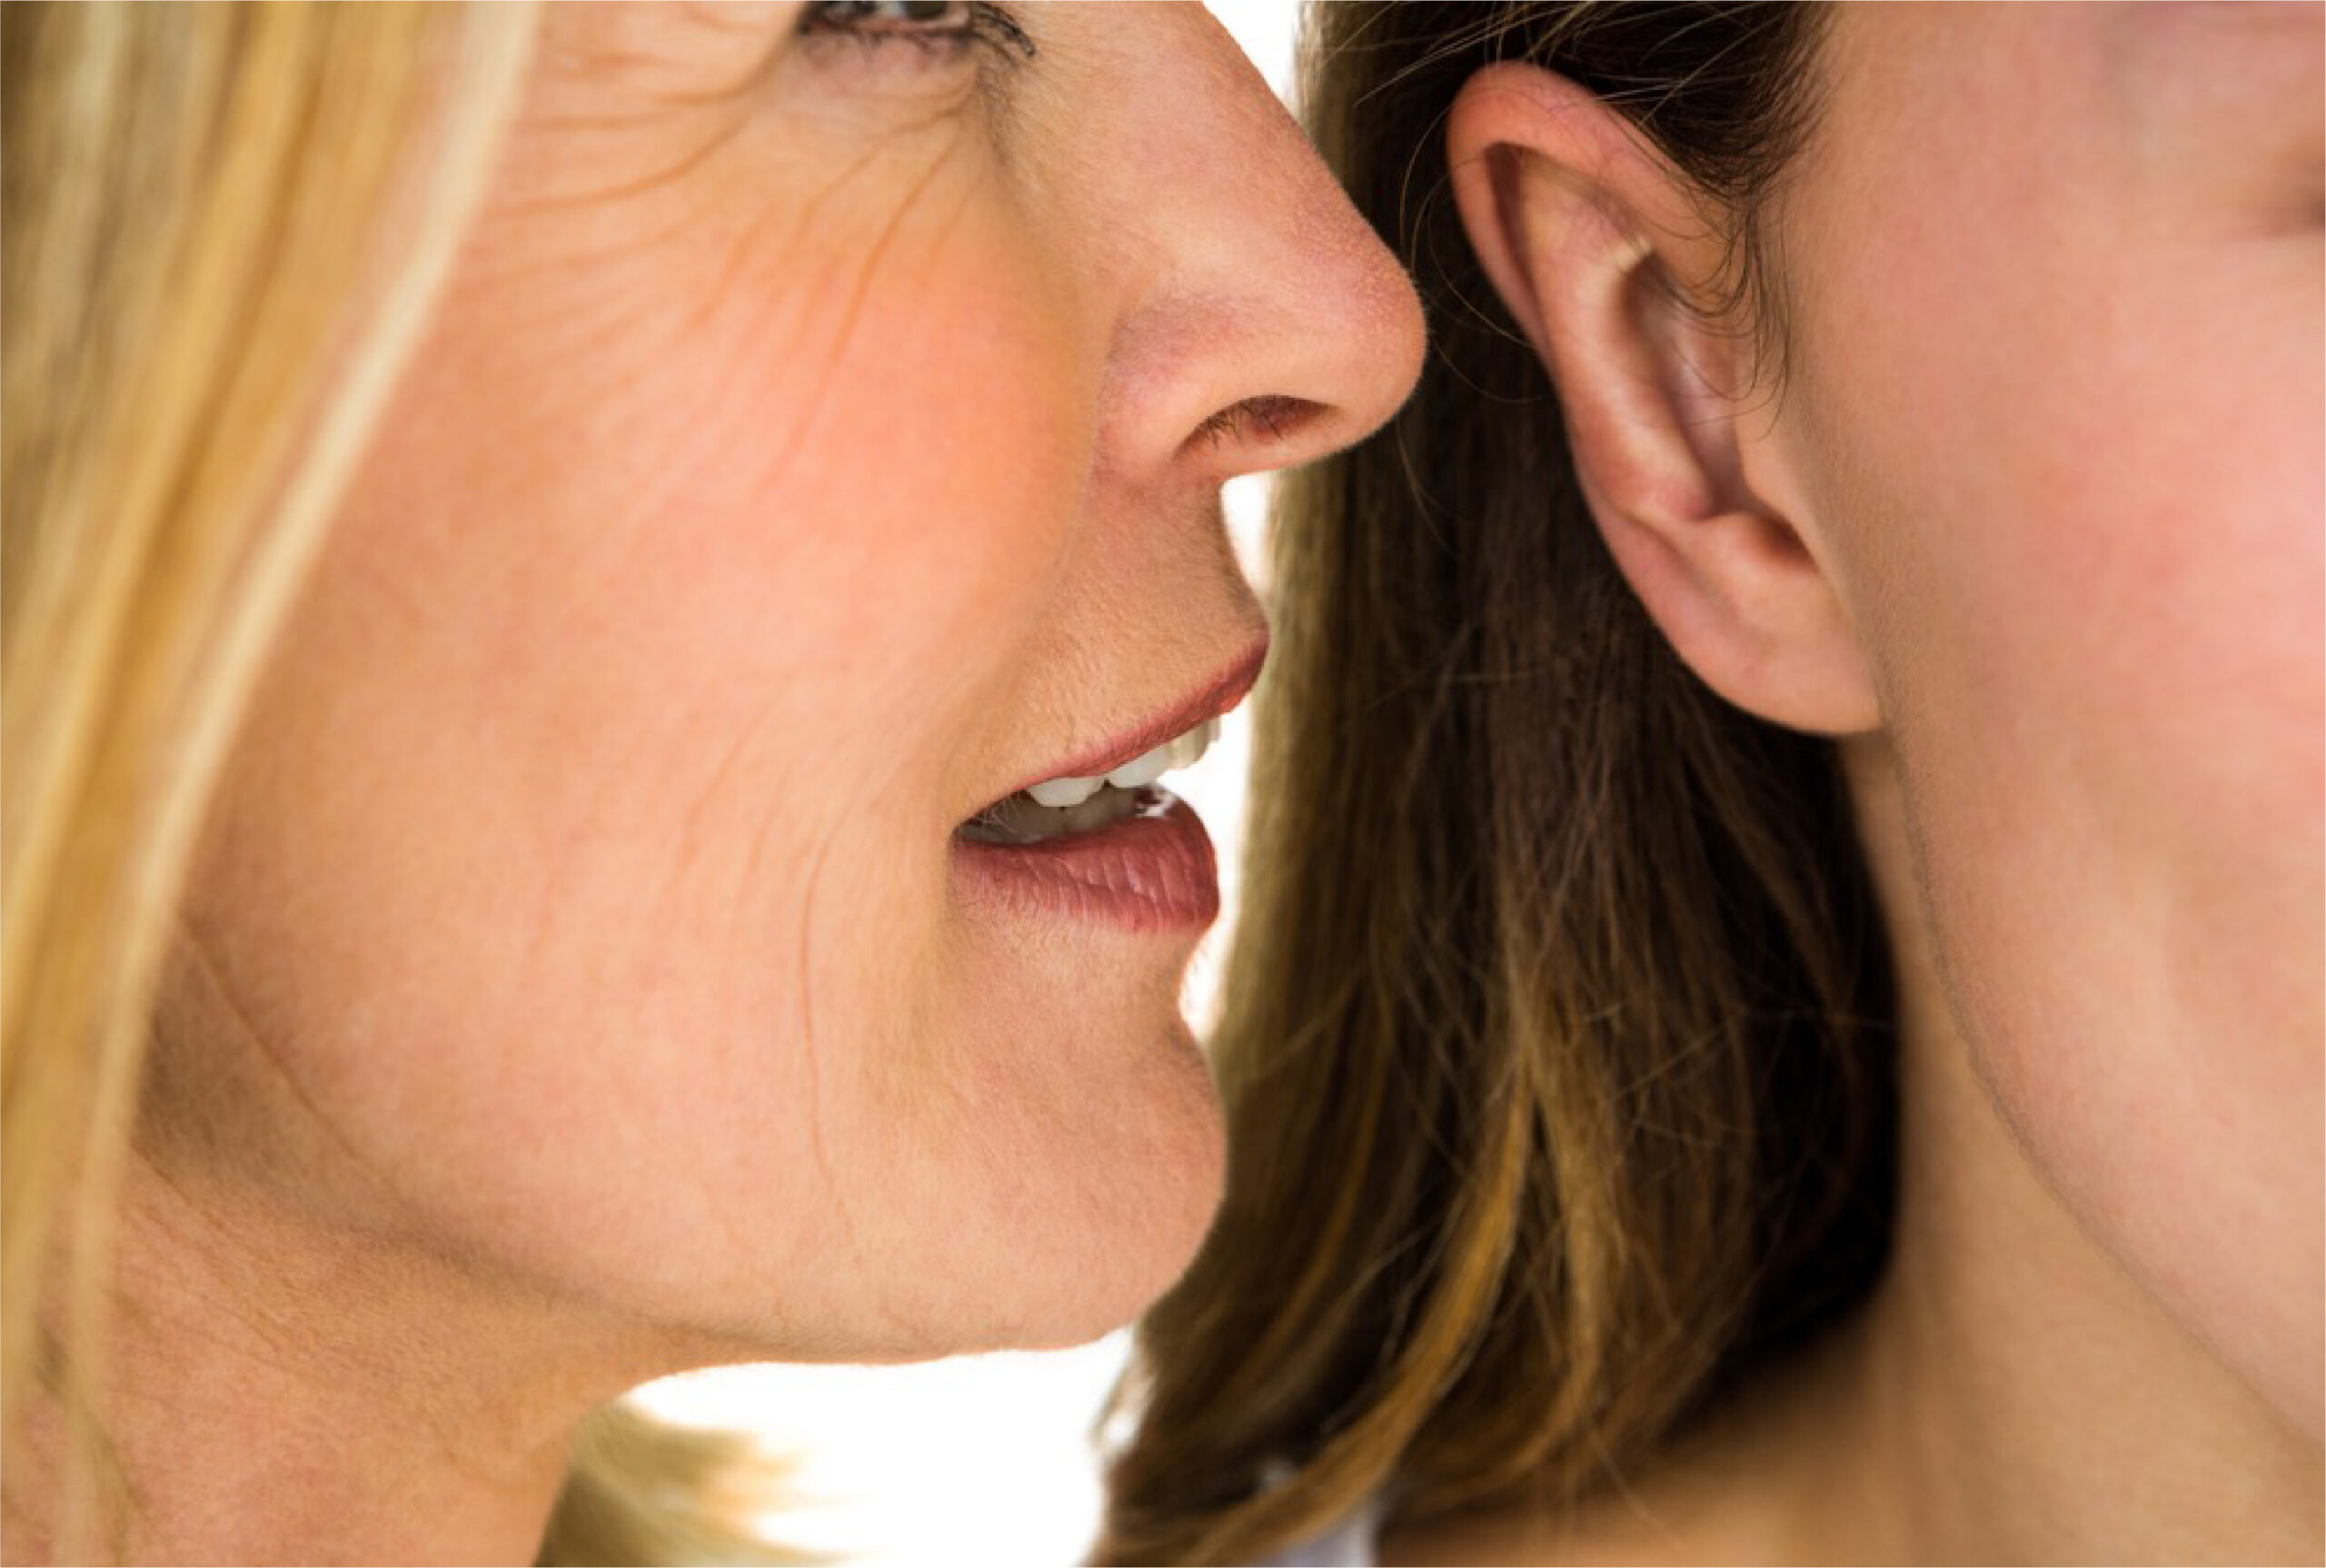 Femme chuchotant à l'oreille d'une autre femme